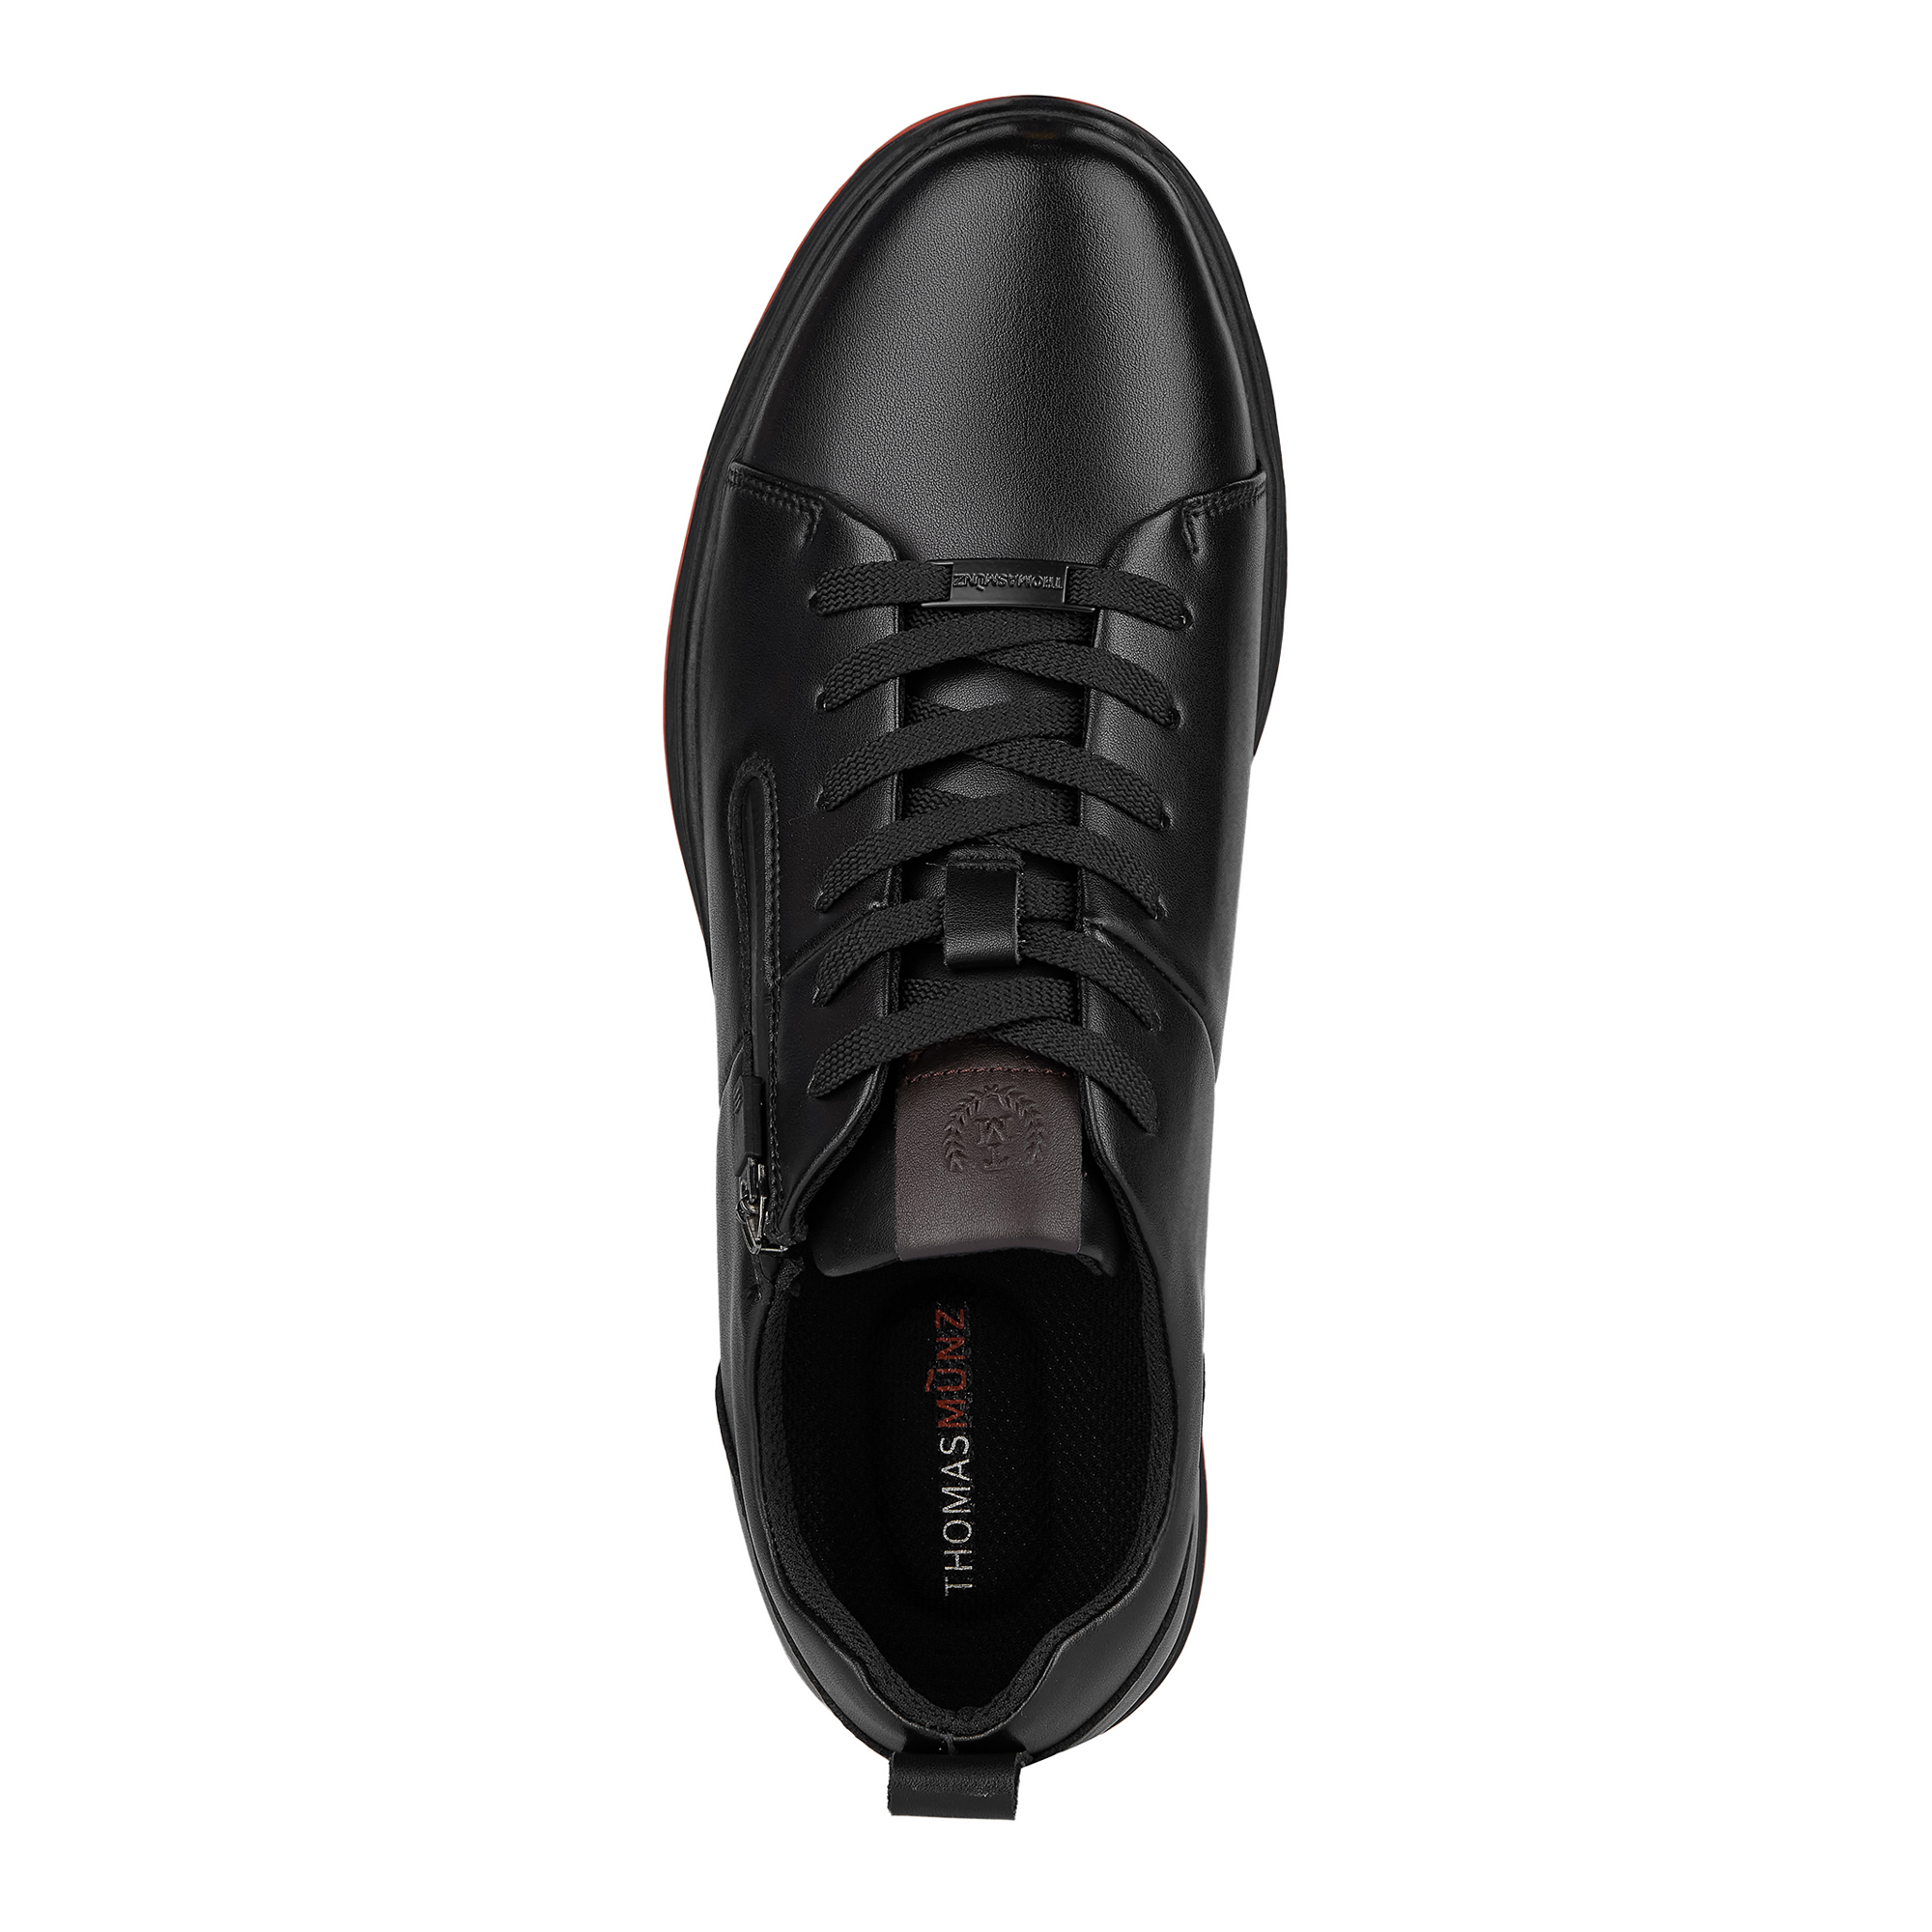 Туфли/полуботинки Thomas Munz 104-386A-2602, цвет черный, размер 40 - фото 5